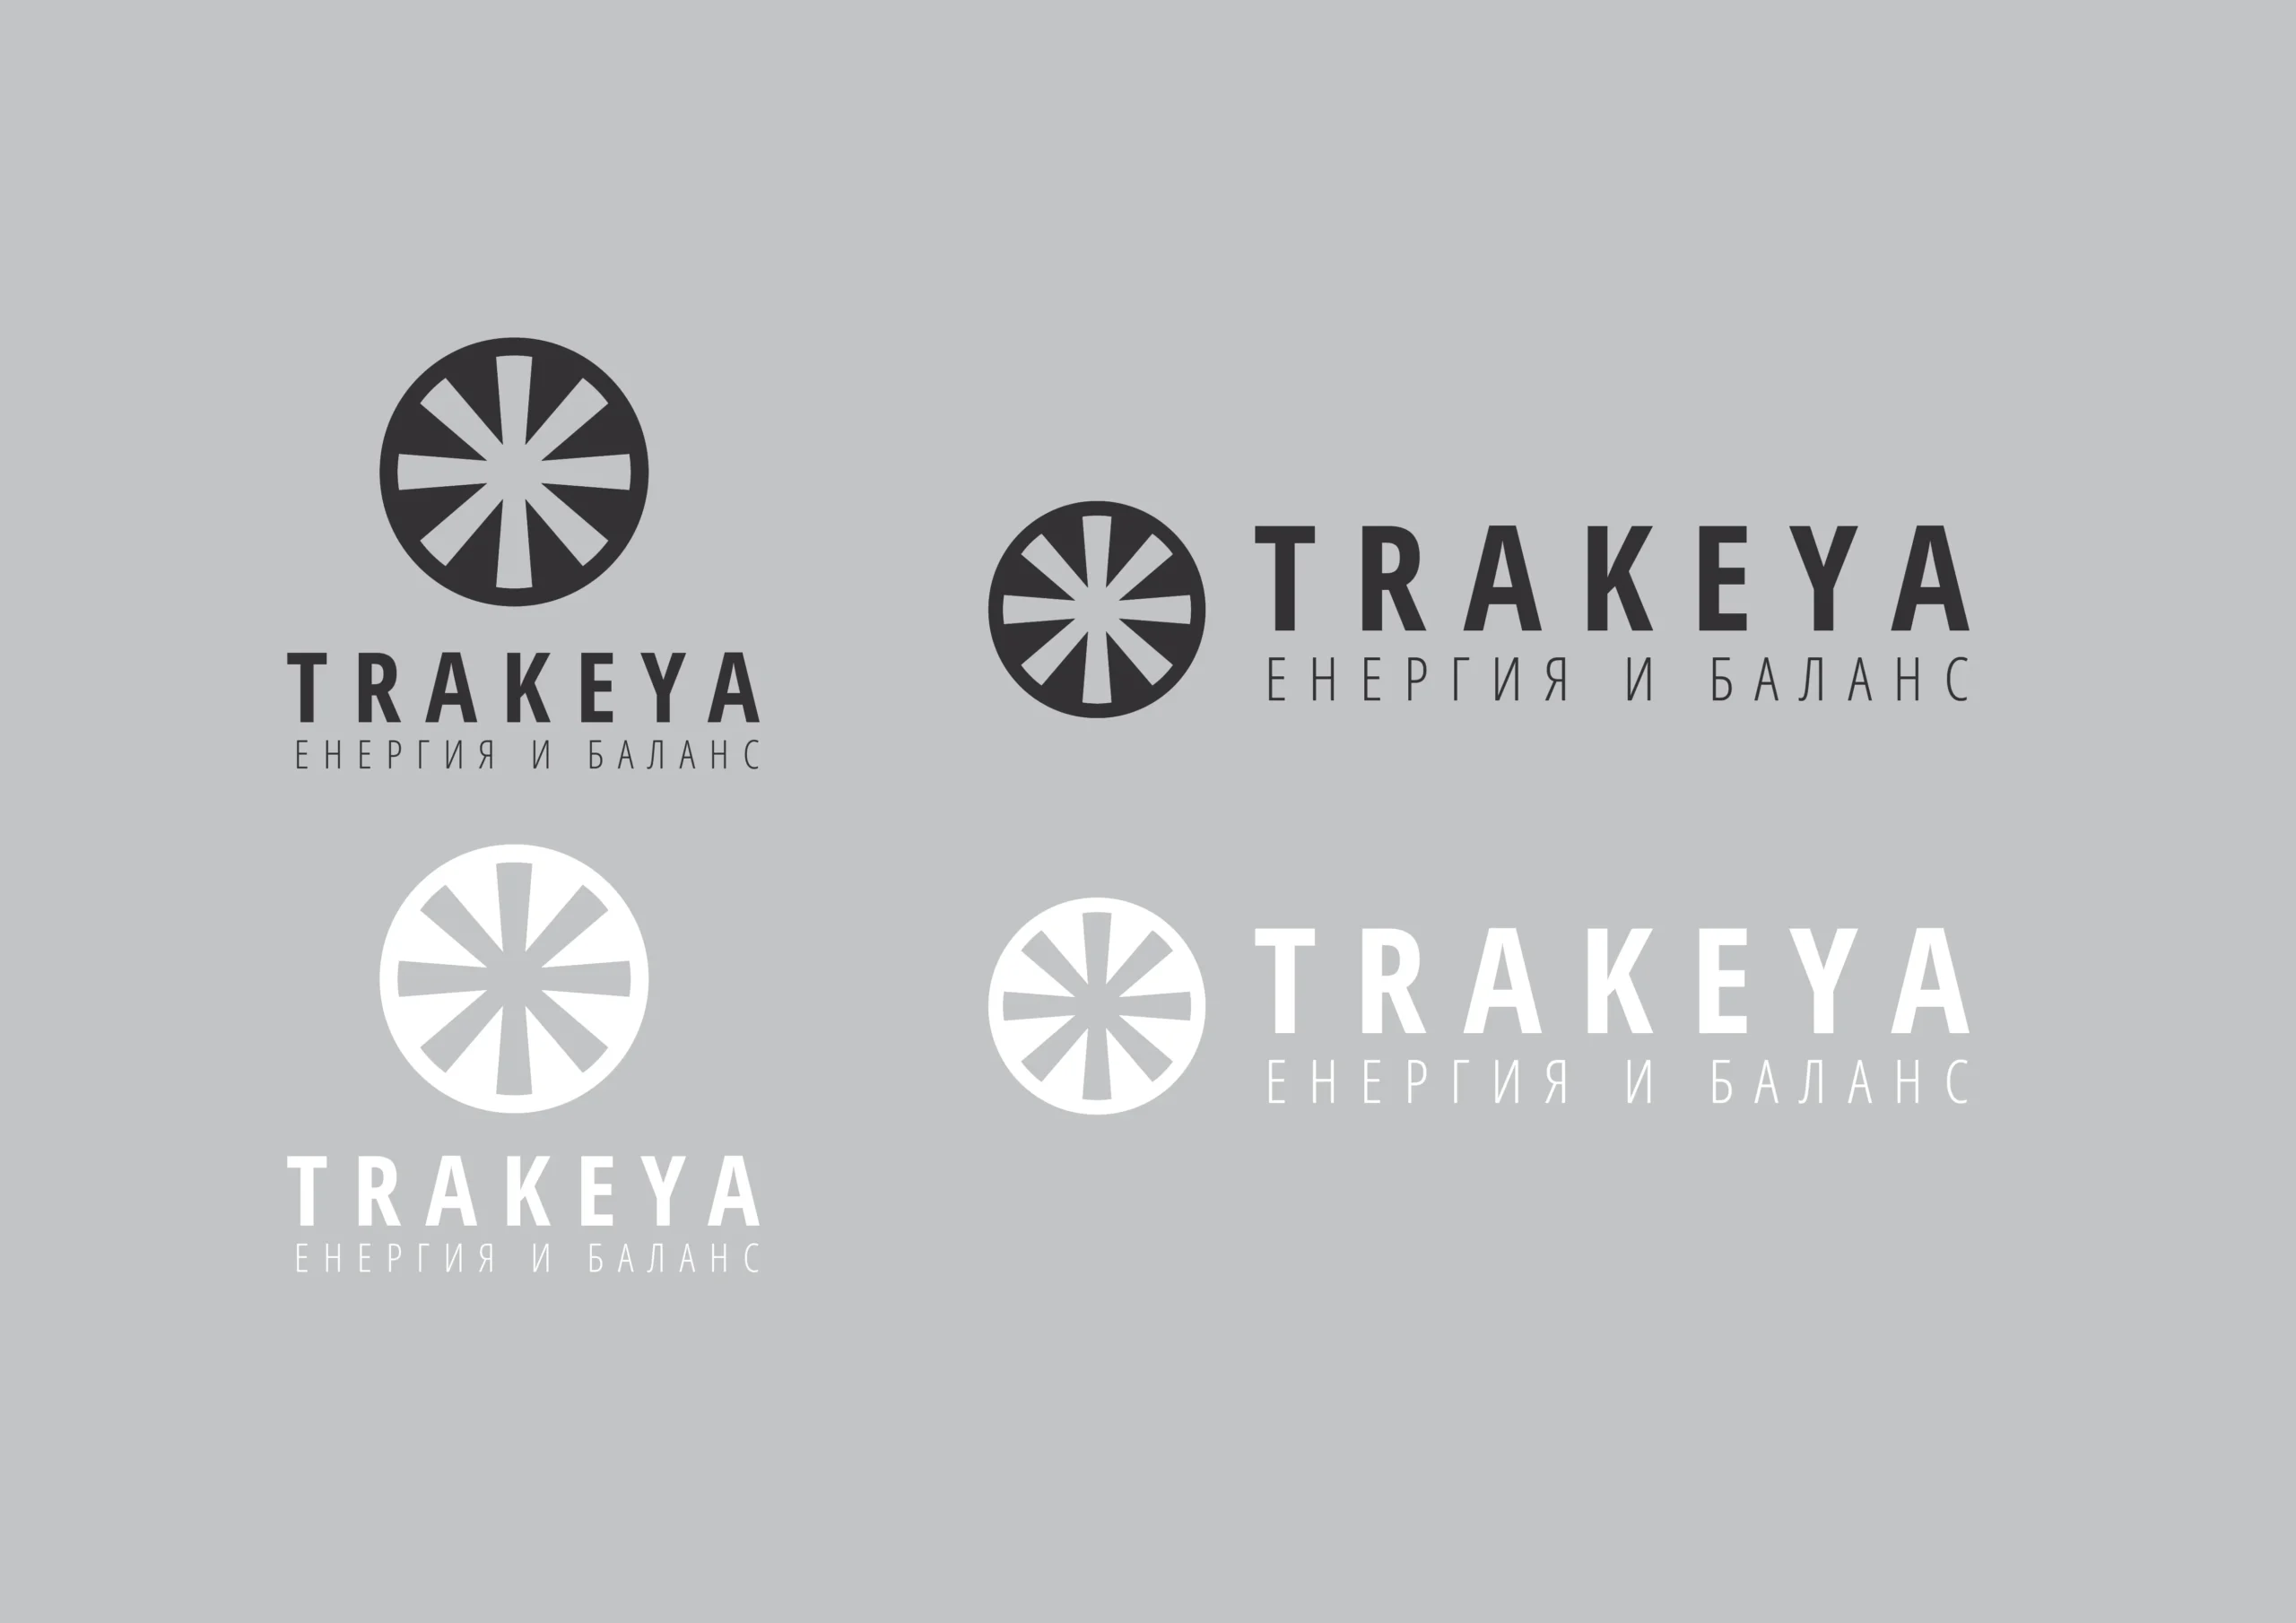 Trakeya_logo_bw2-3